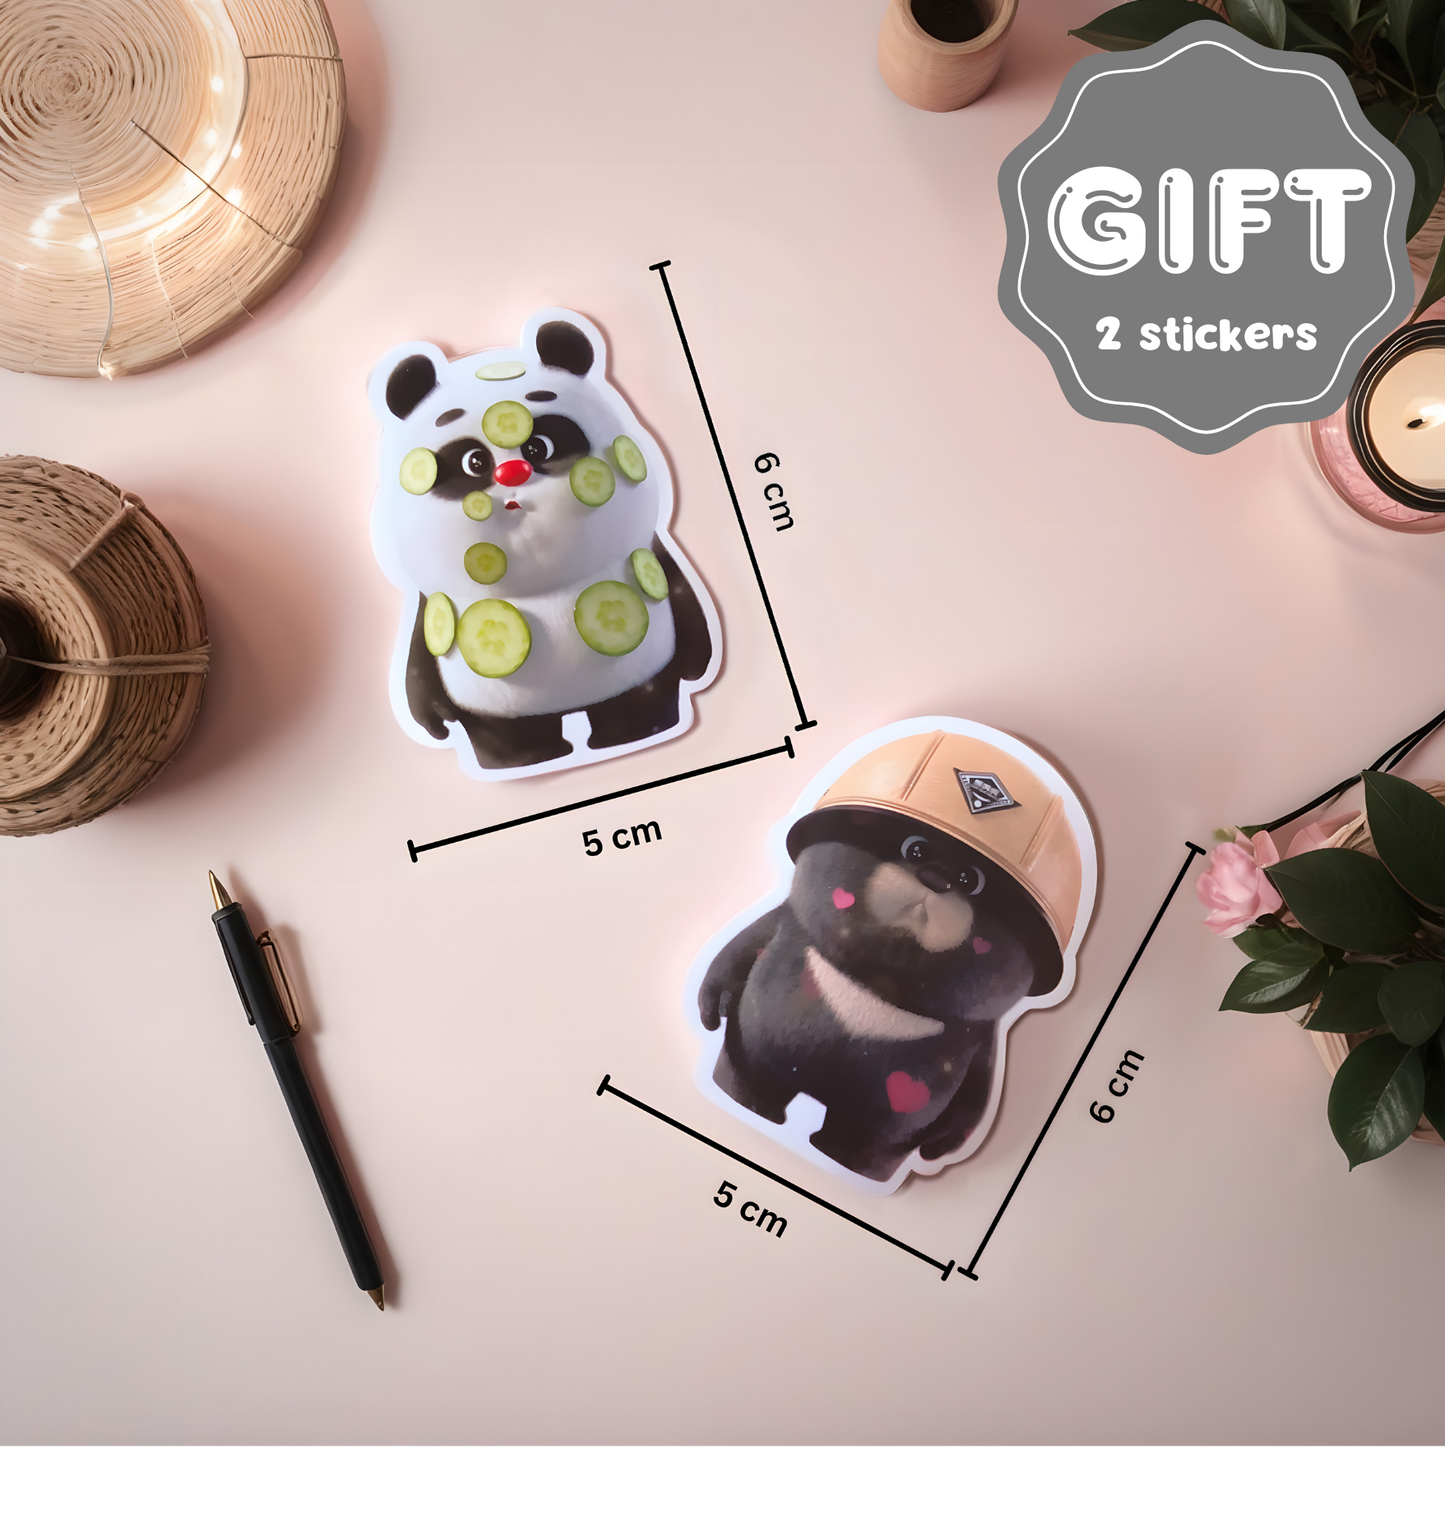 Bamboo Panda Ultra Comfy Short Sleeve T-Shirt | Sketchy Style | Free Shipping